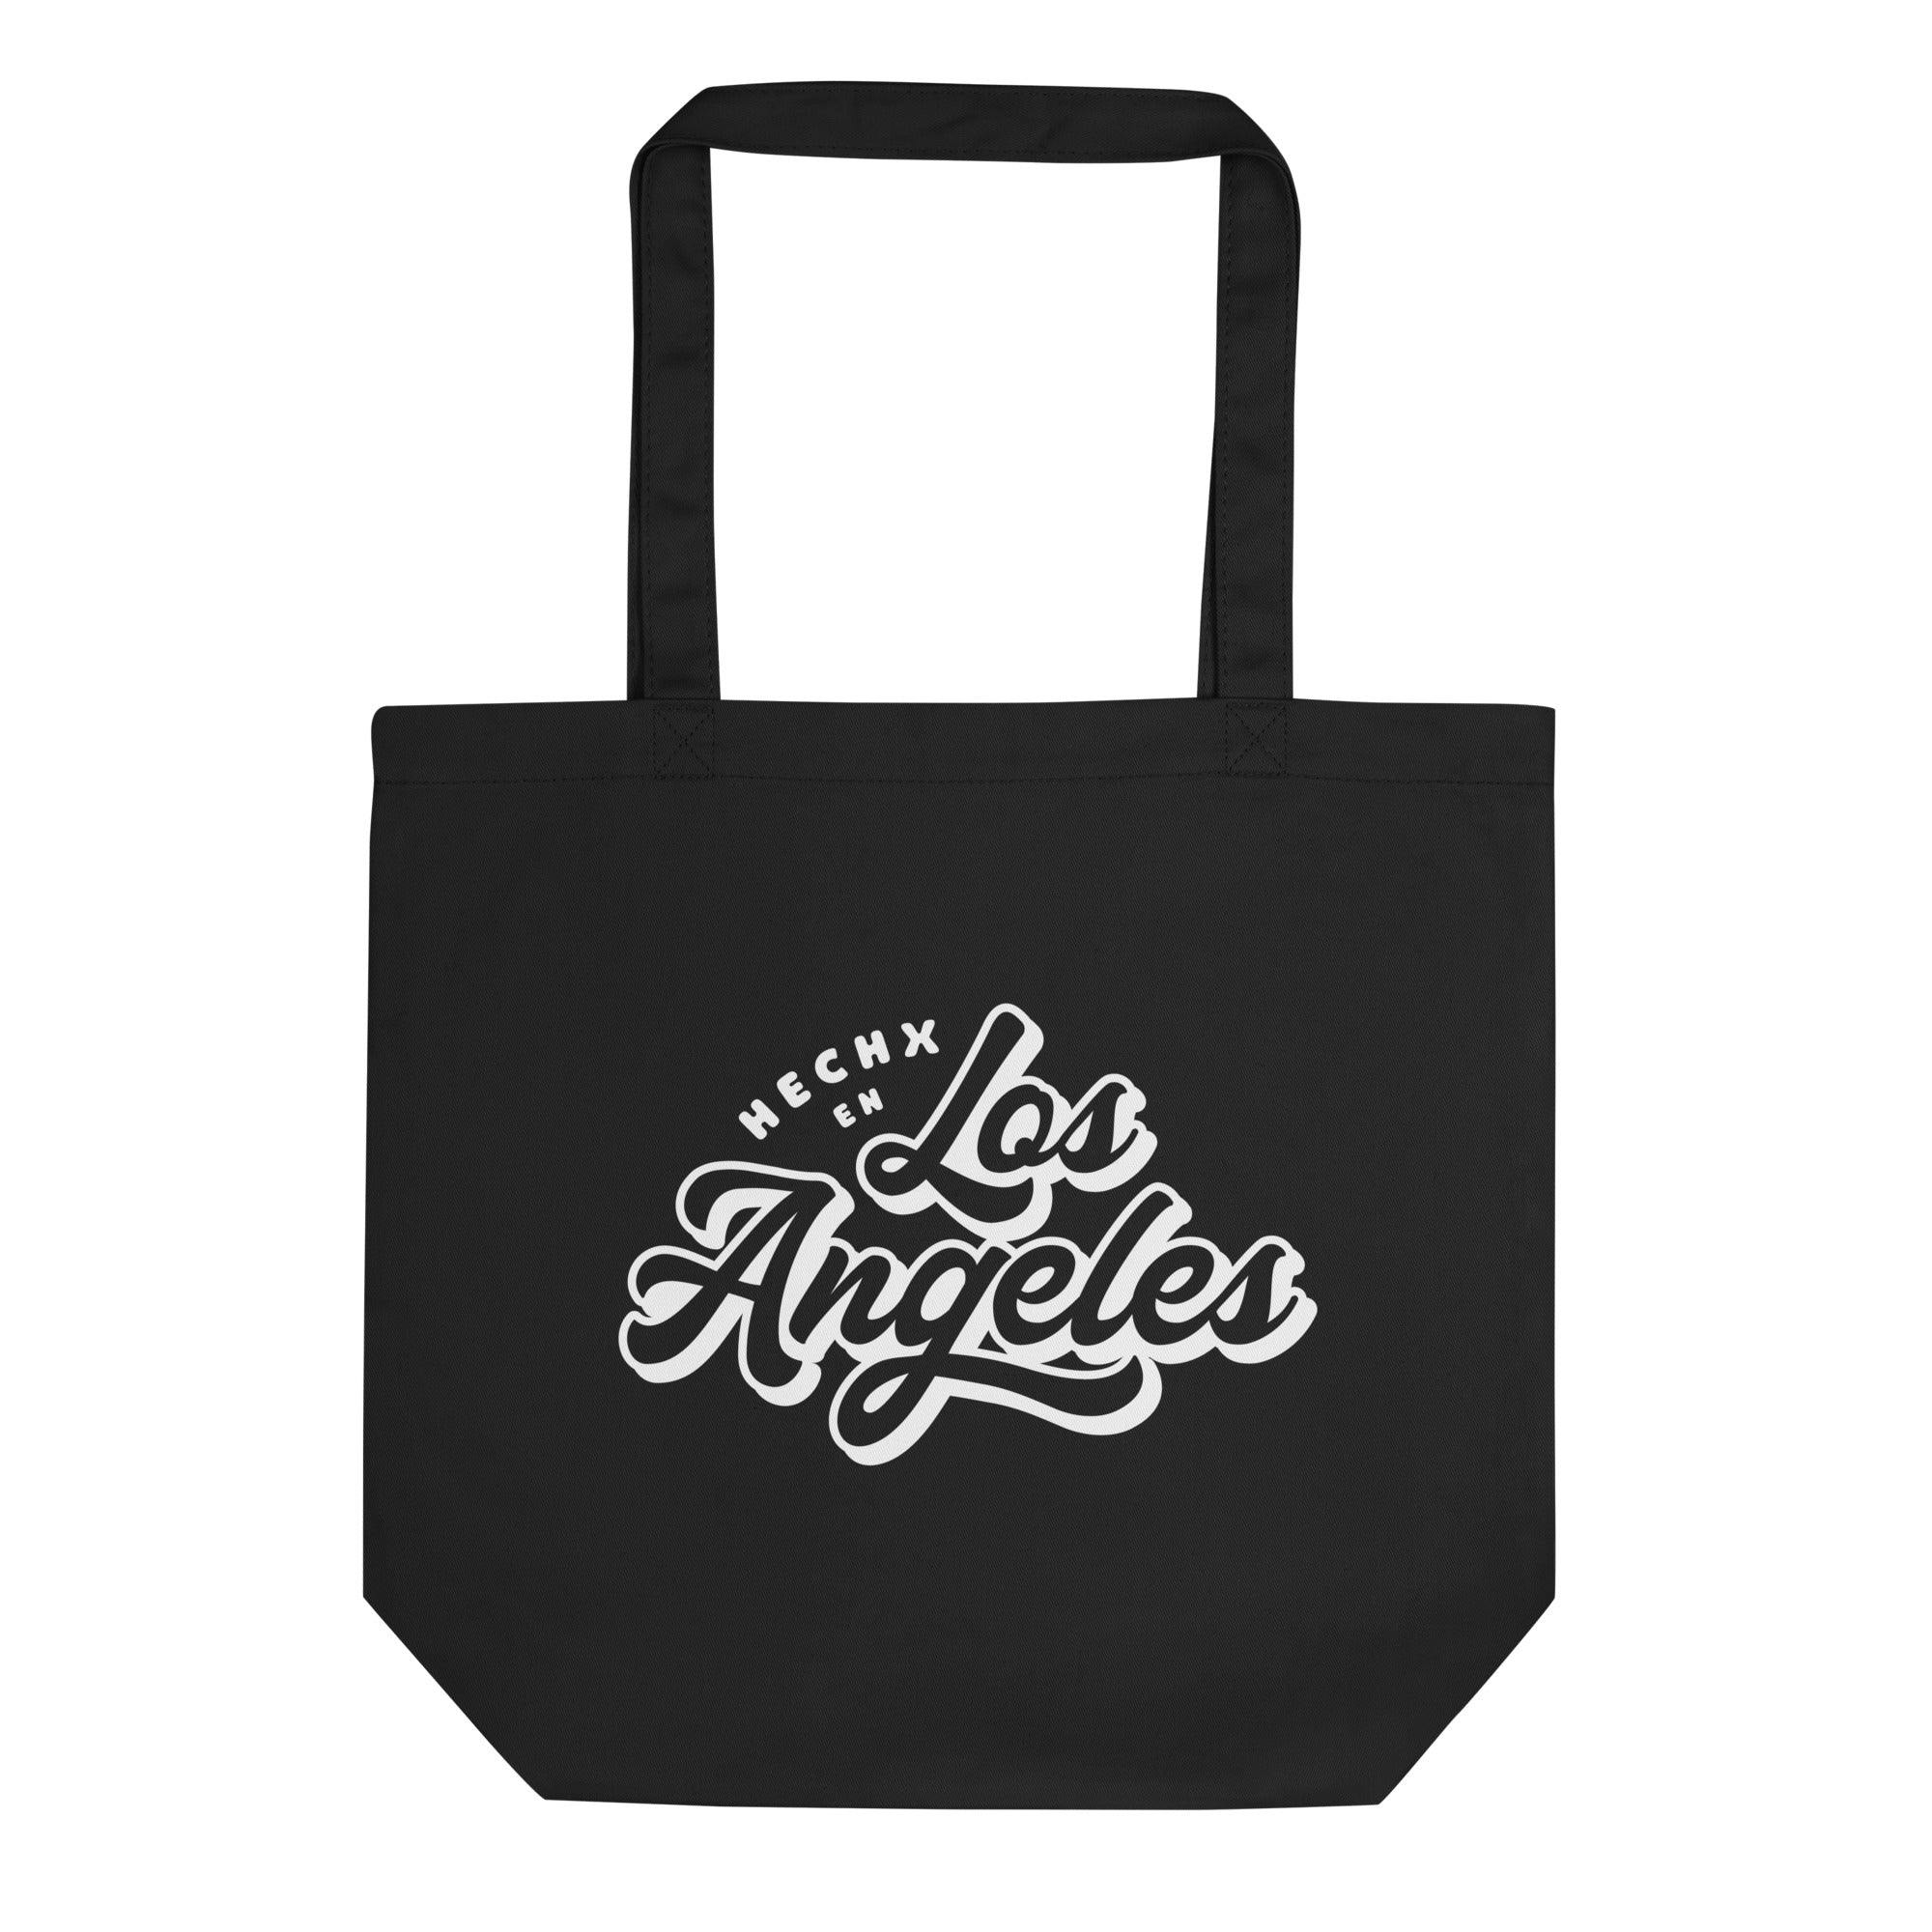 Hechx En Los Angeles Eco Tote Bag